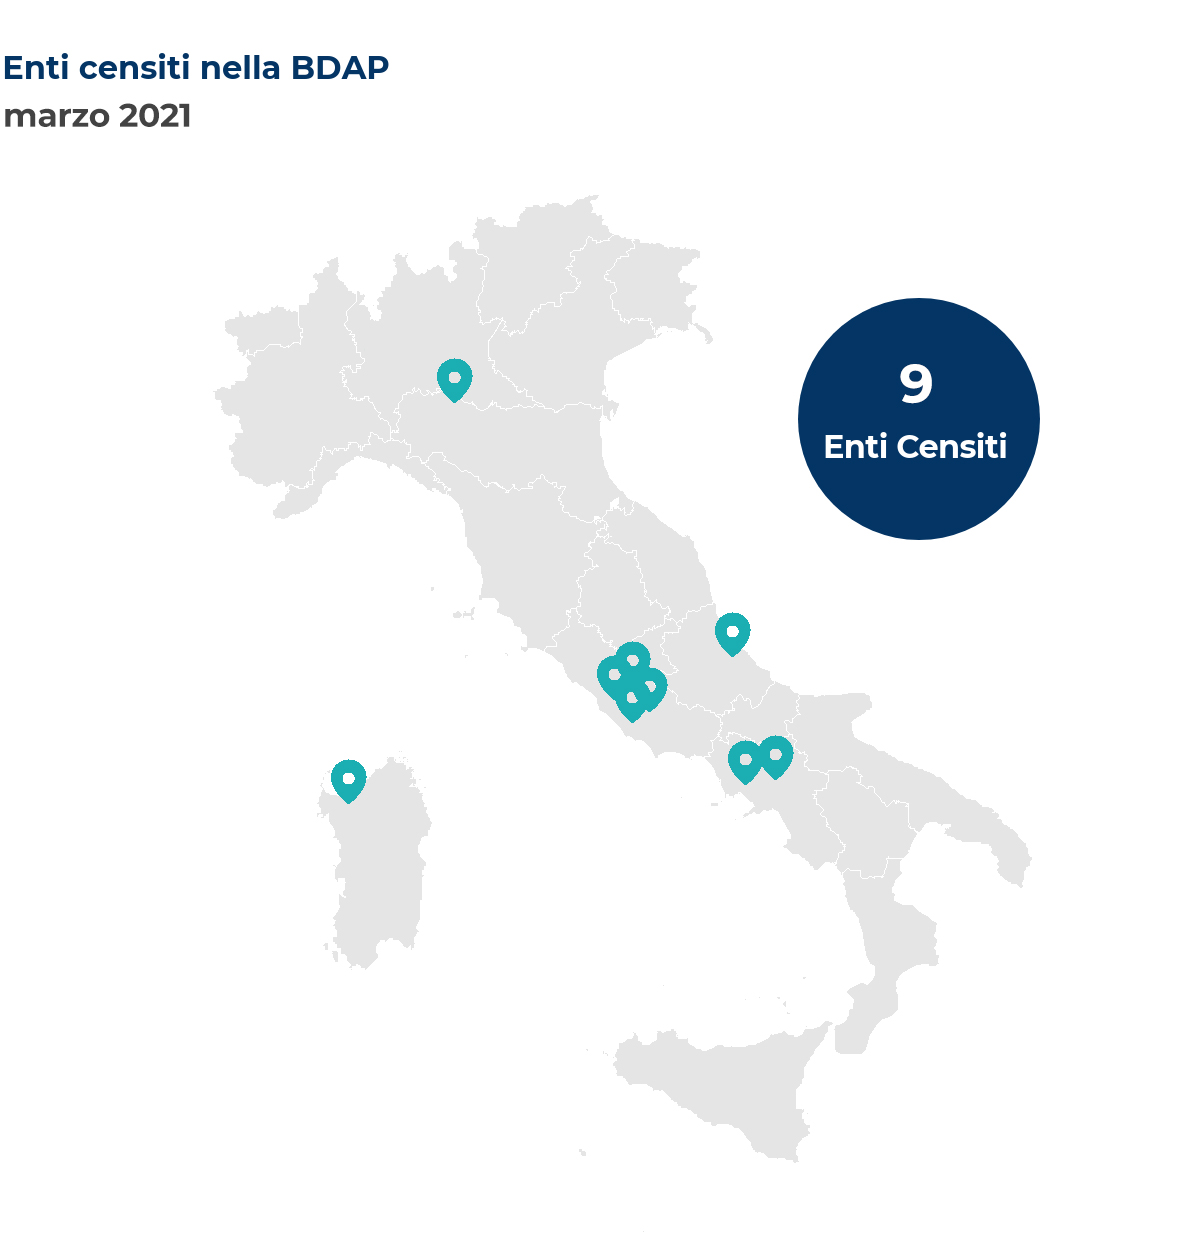 Mappa dell'Italia che mostra la localizzazione degli enti censiti nella BDAP. Nel mese di marzo 2021 sono stati censiti 9 nuovi enti così distribuiti per regione: Abruzzo un ente; Campania due enti; Emilia-Romagna un ente; Lazio quattro enti; Sardegna un ente.